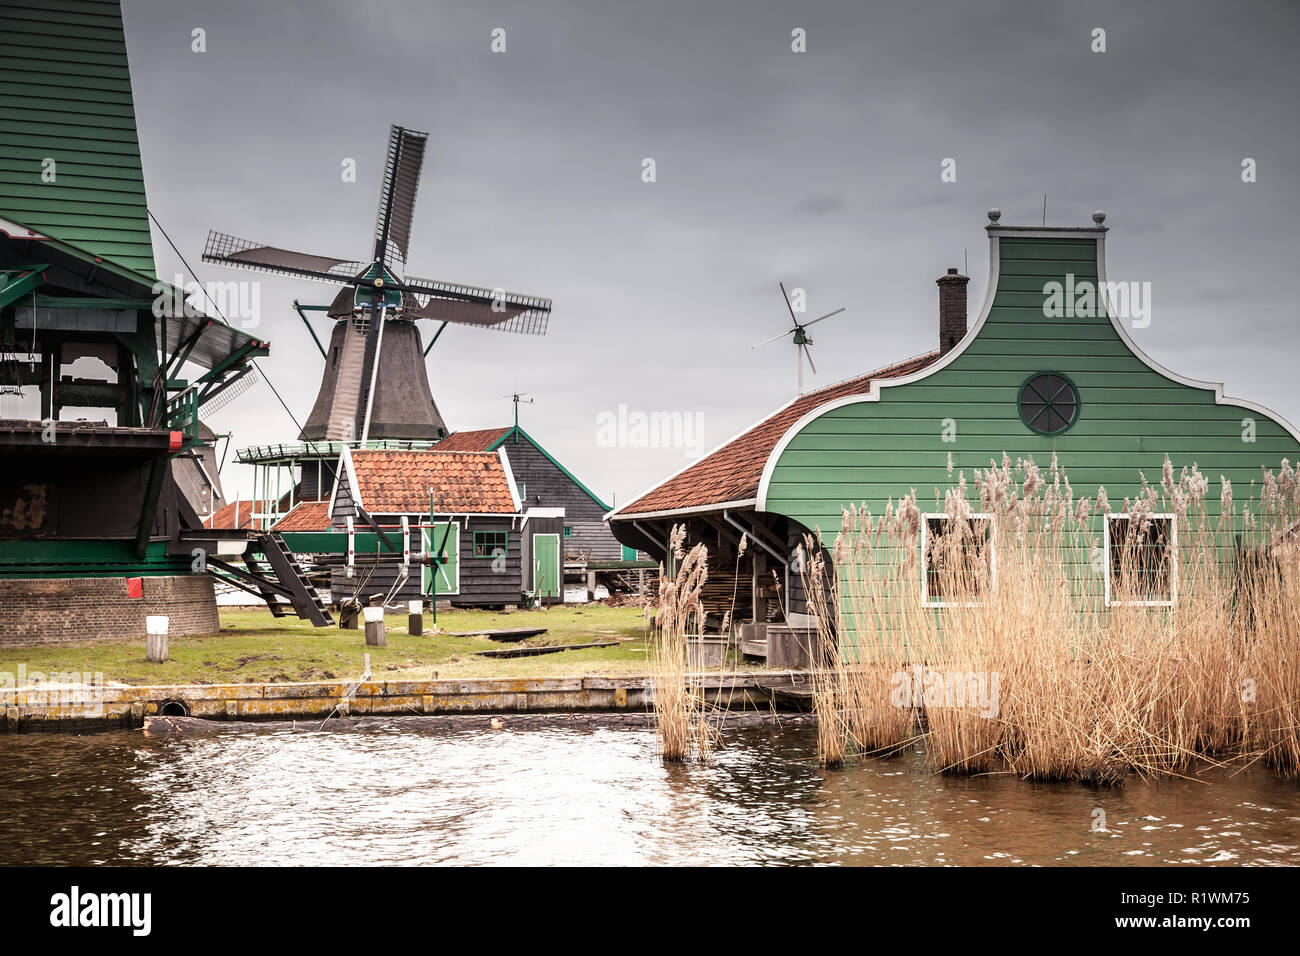 Alte hölzerne Scheunen und Mühle am Fluss Zaan Küste. Zaanse Schans, beliebten touristischen Attraktionen der Niederlande. Vorort von Amsterdam Stockfoto